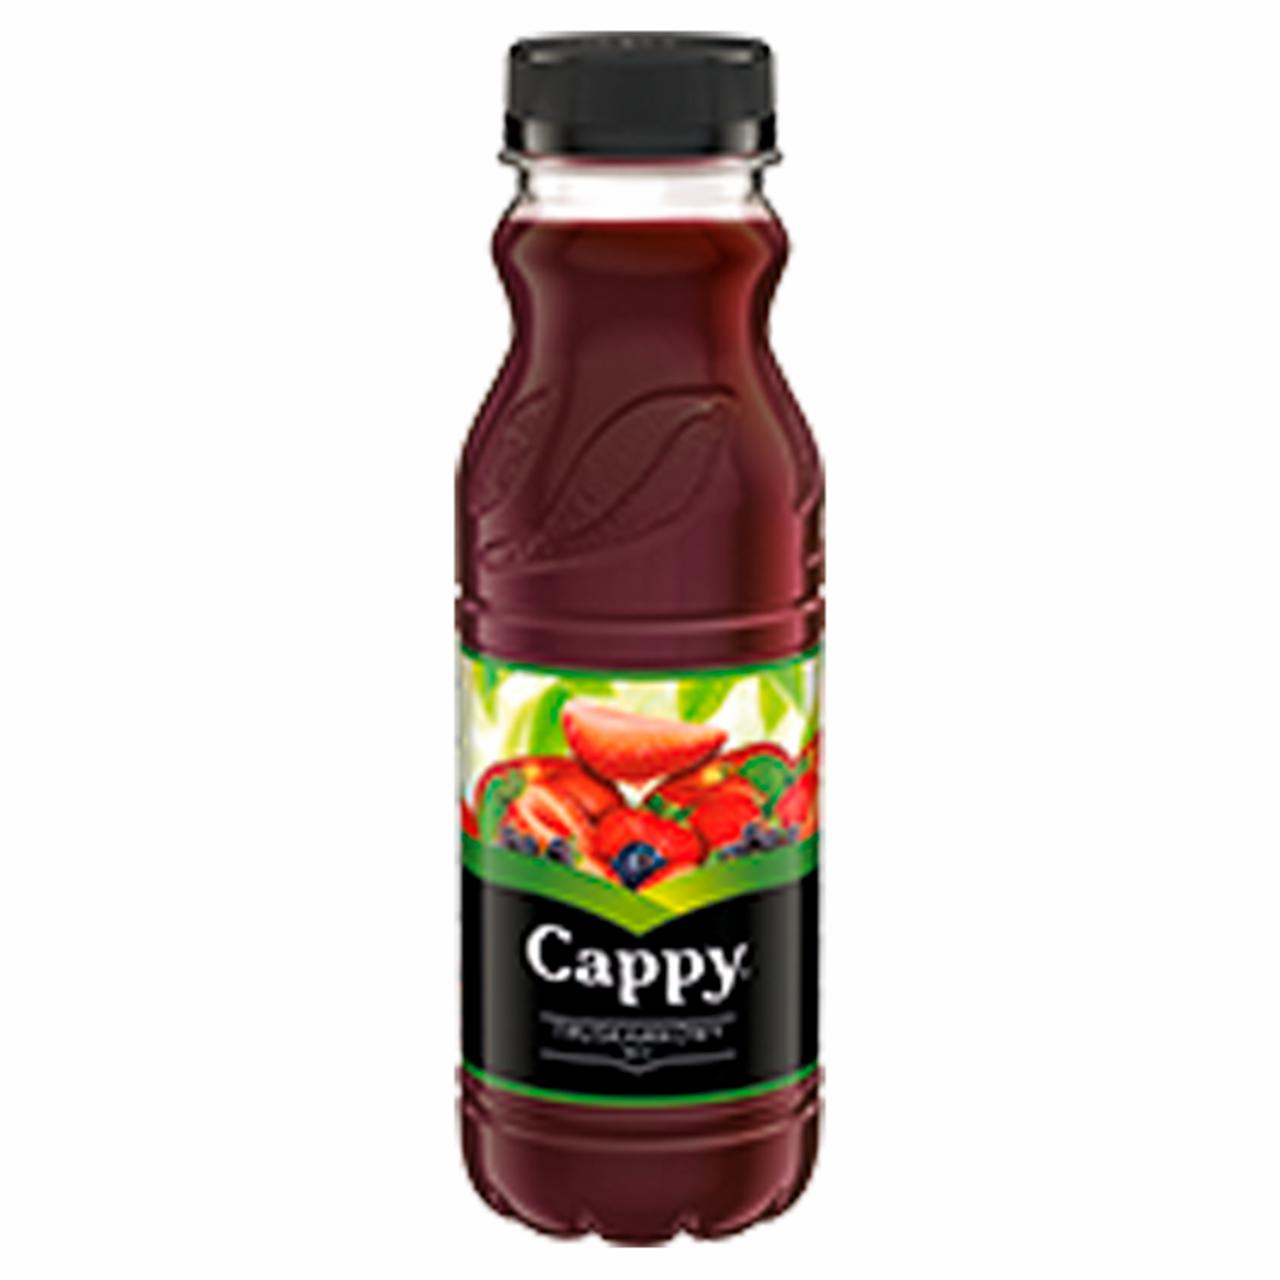 Képek - Cappy Eper mix gyümölcsital gyümölcslével és gyümölcspürével cukorral és édesítőszerekkel 330 ml